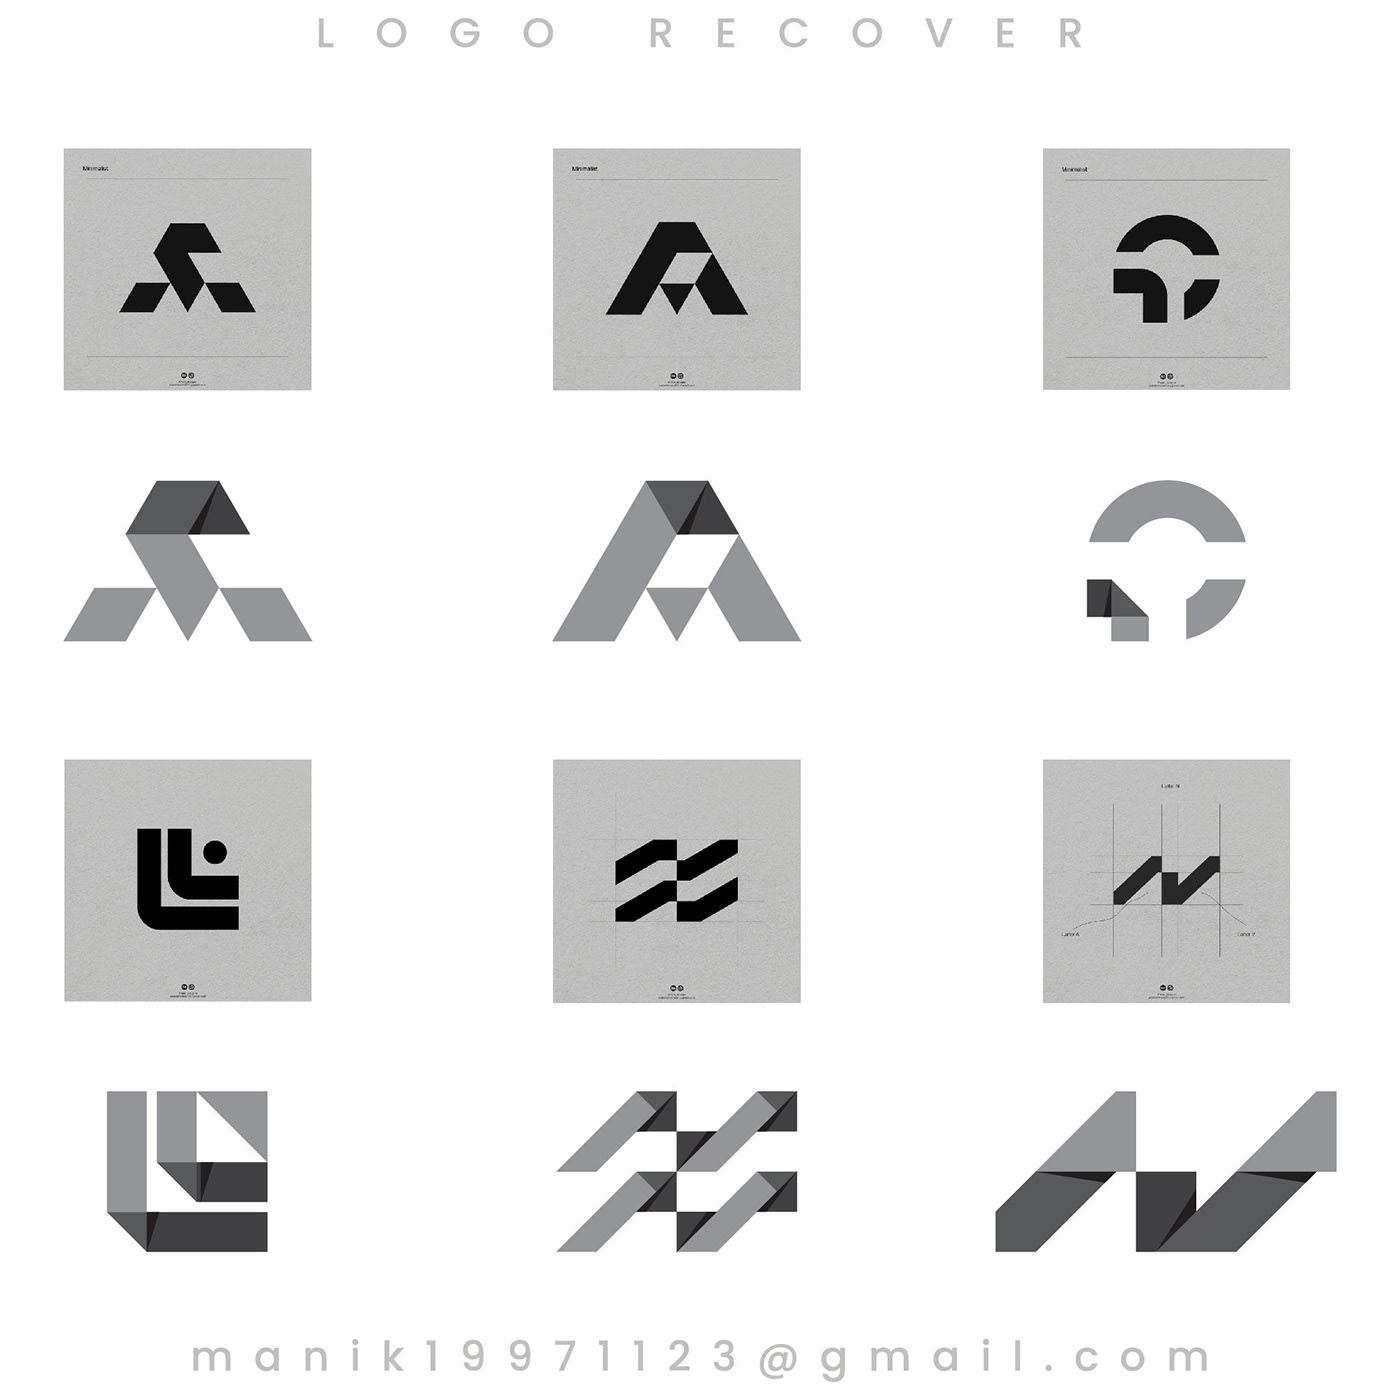 logo Logo Design Tech logo logos logo design process logo design illustrator logo design tutorial Music Player Logo redesign logo type